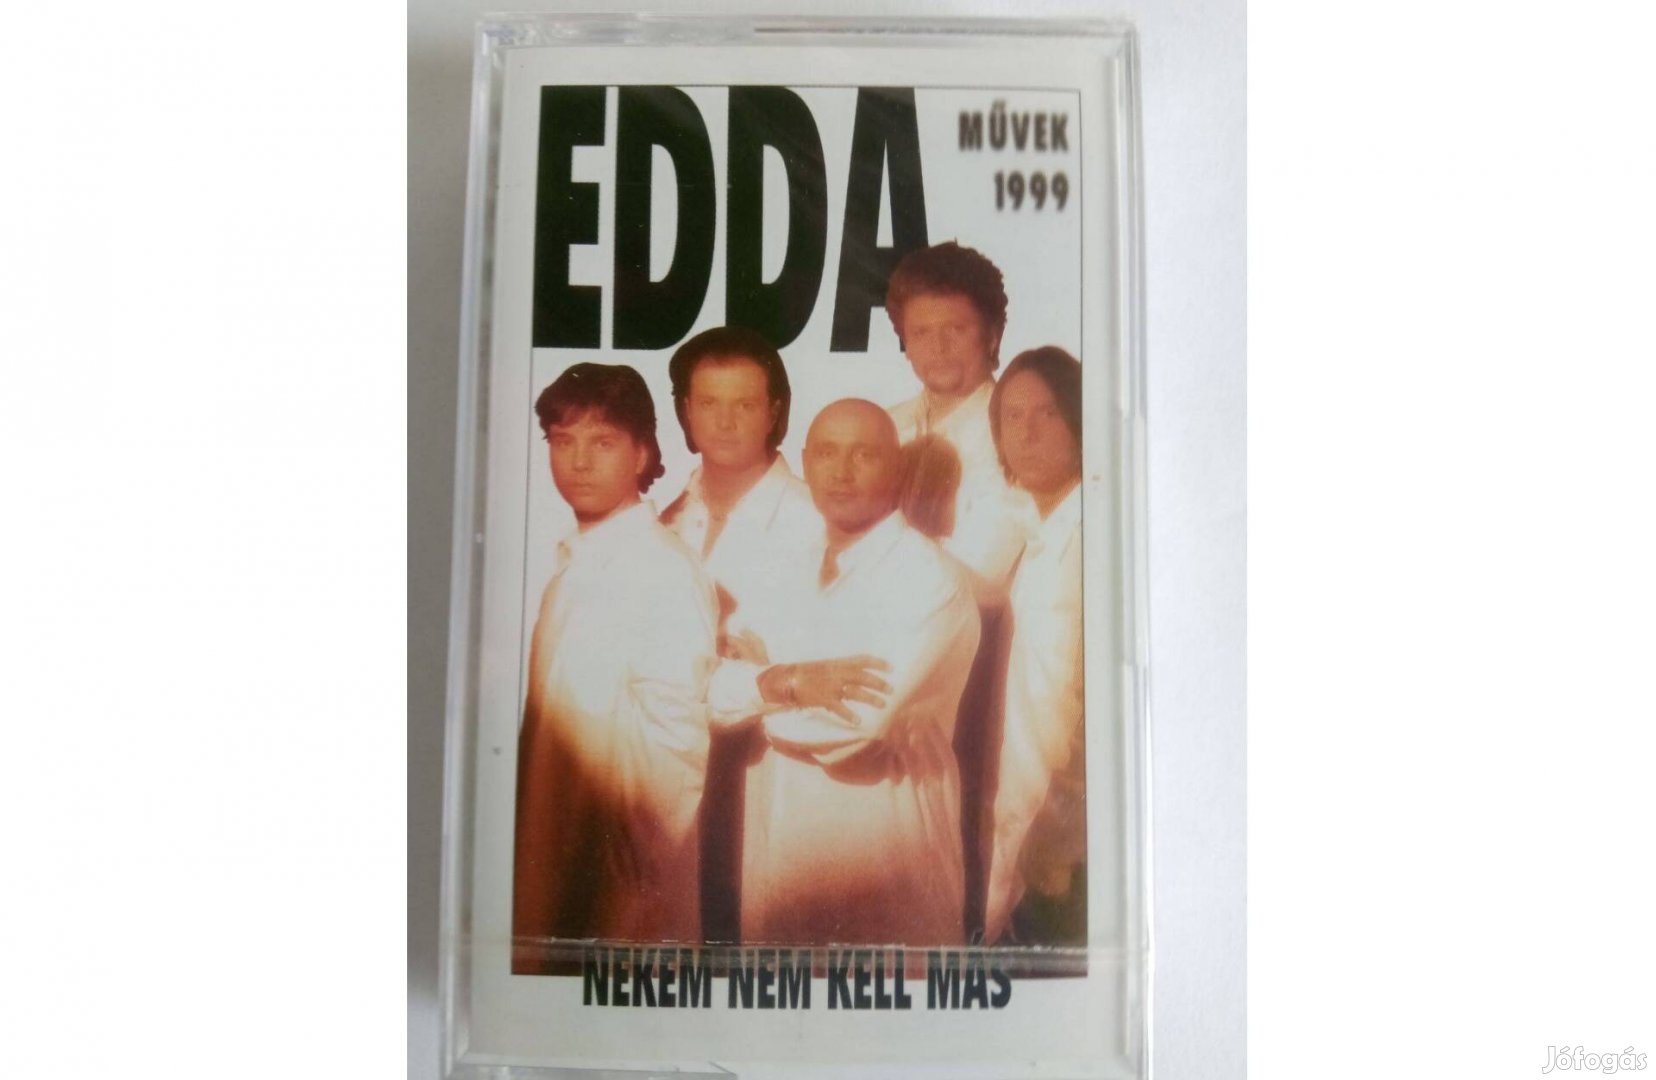 Edda művek: 1999 audió kazetta (bontatlan)